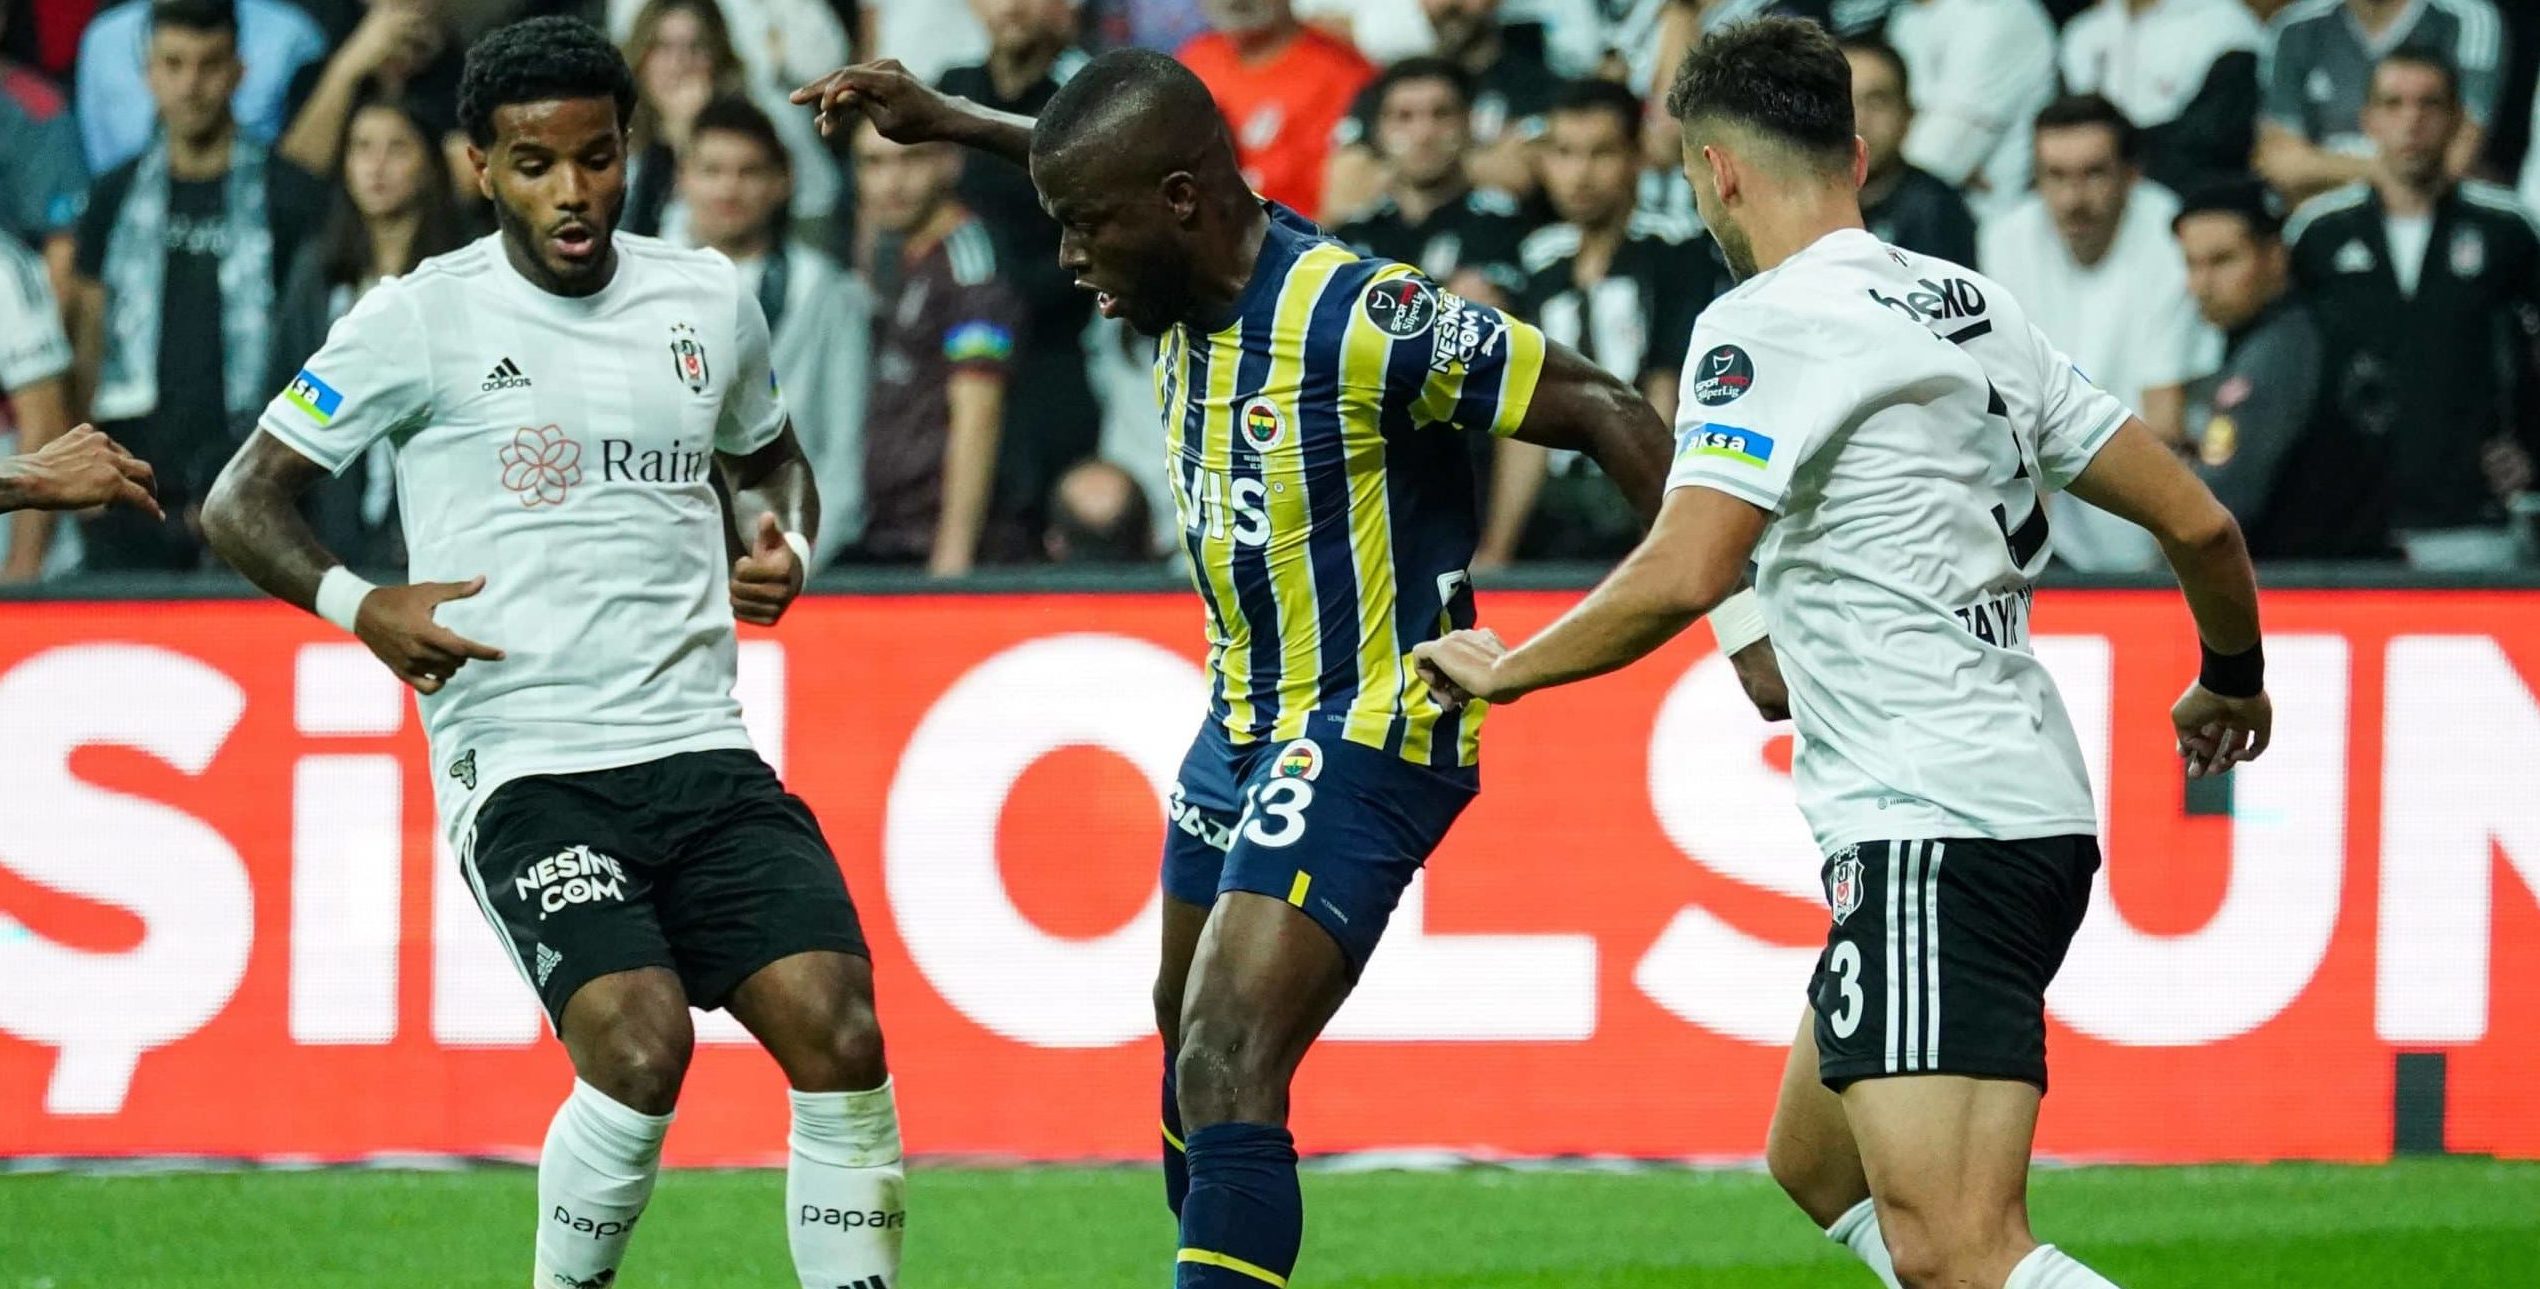 Ankaragücü vs Fenerbahçe: A Clash of Football Titans